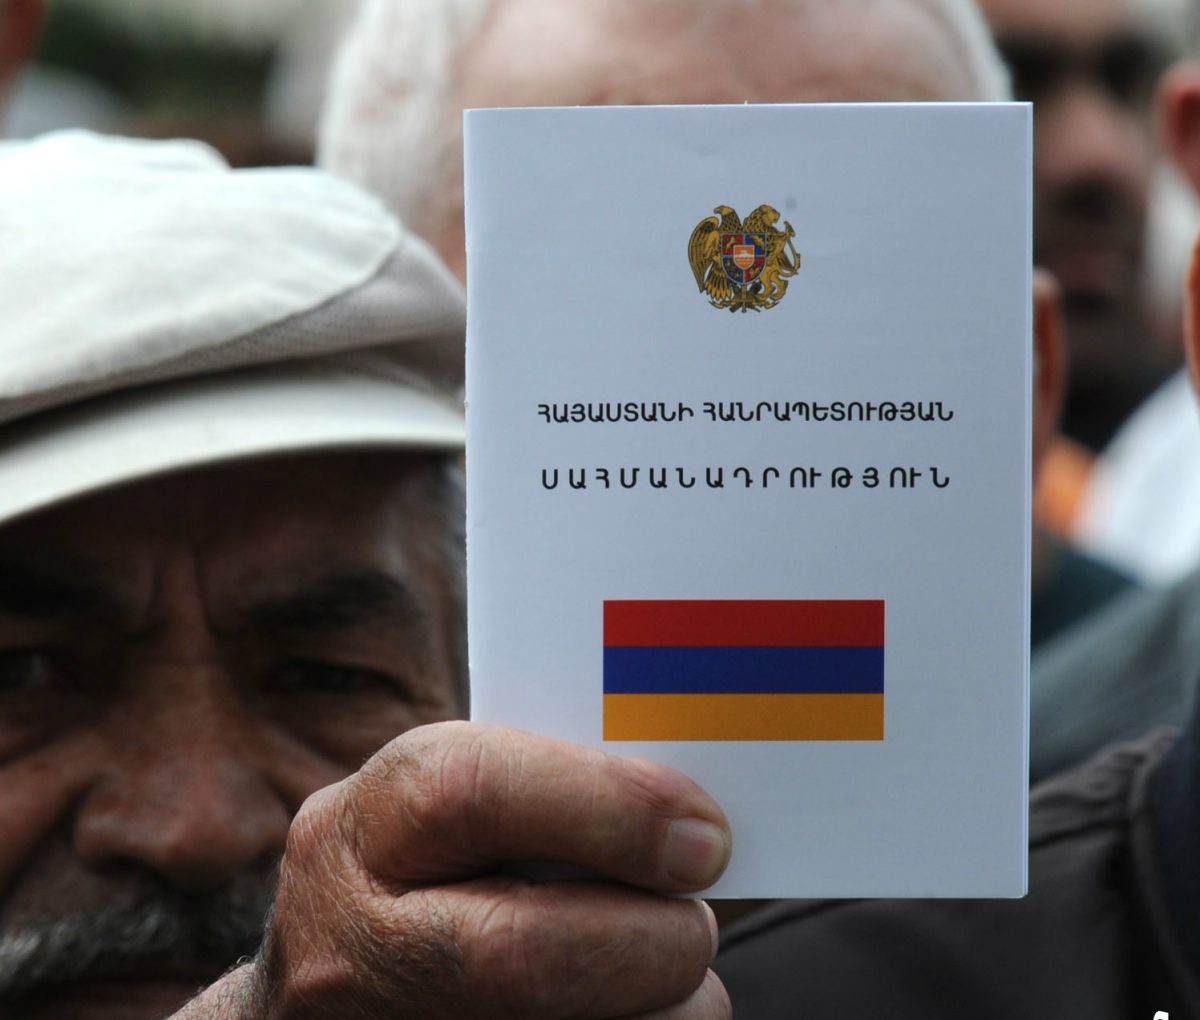 Սահմանադրության օրն ու բարեփոխումները Հայաստանում